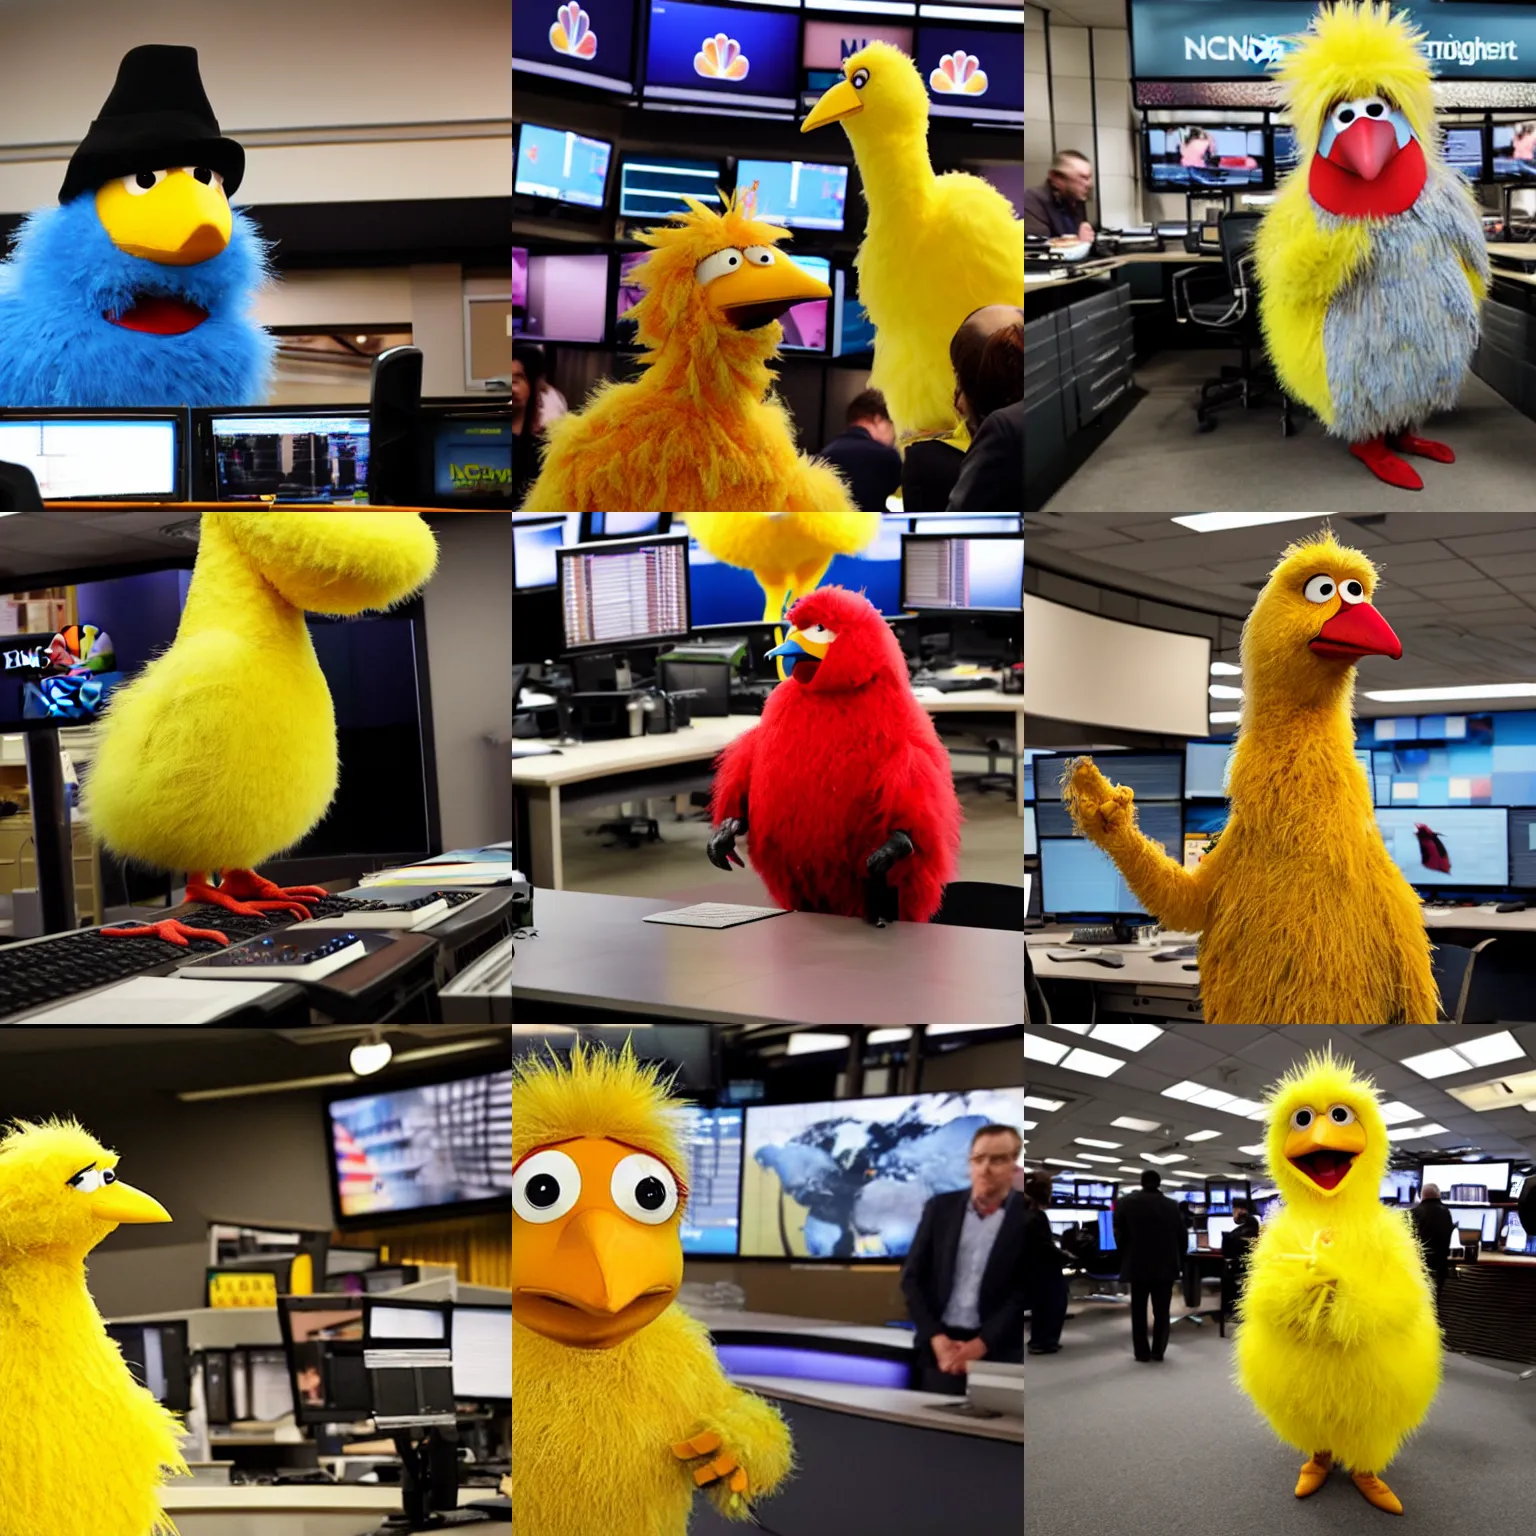 Prompt: bigbird in nbc newsroom